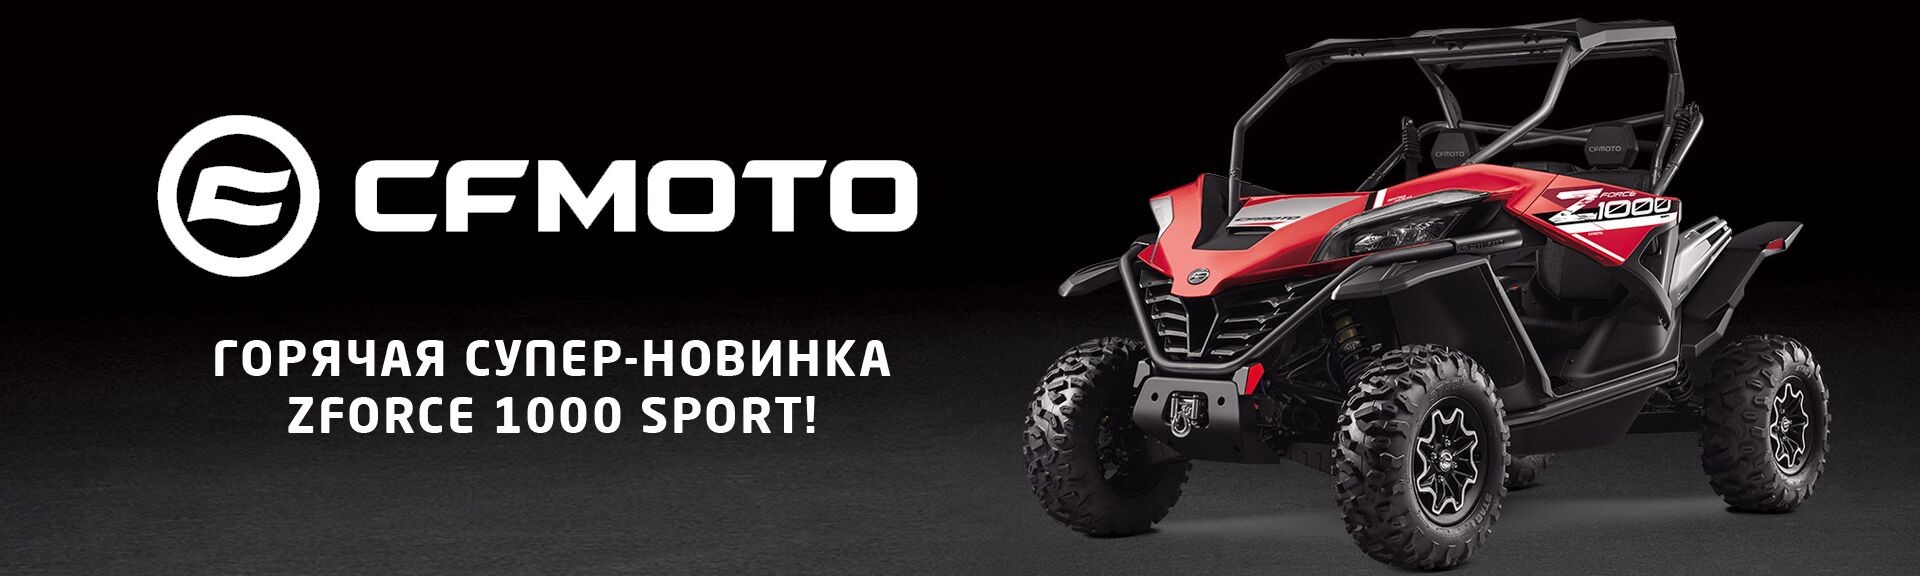 Супер новинка CFMOTO ZFORCE 1000 скоро в Украине!